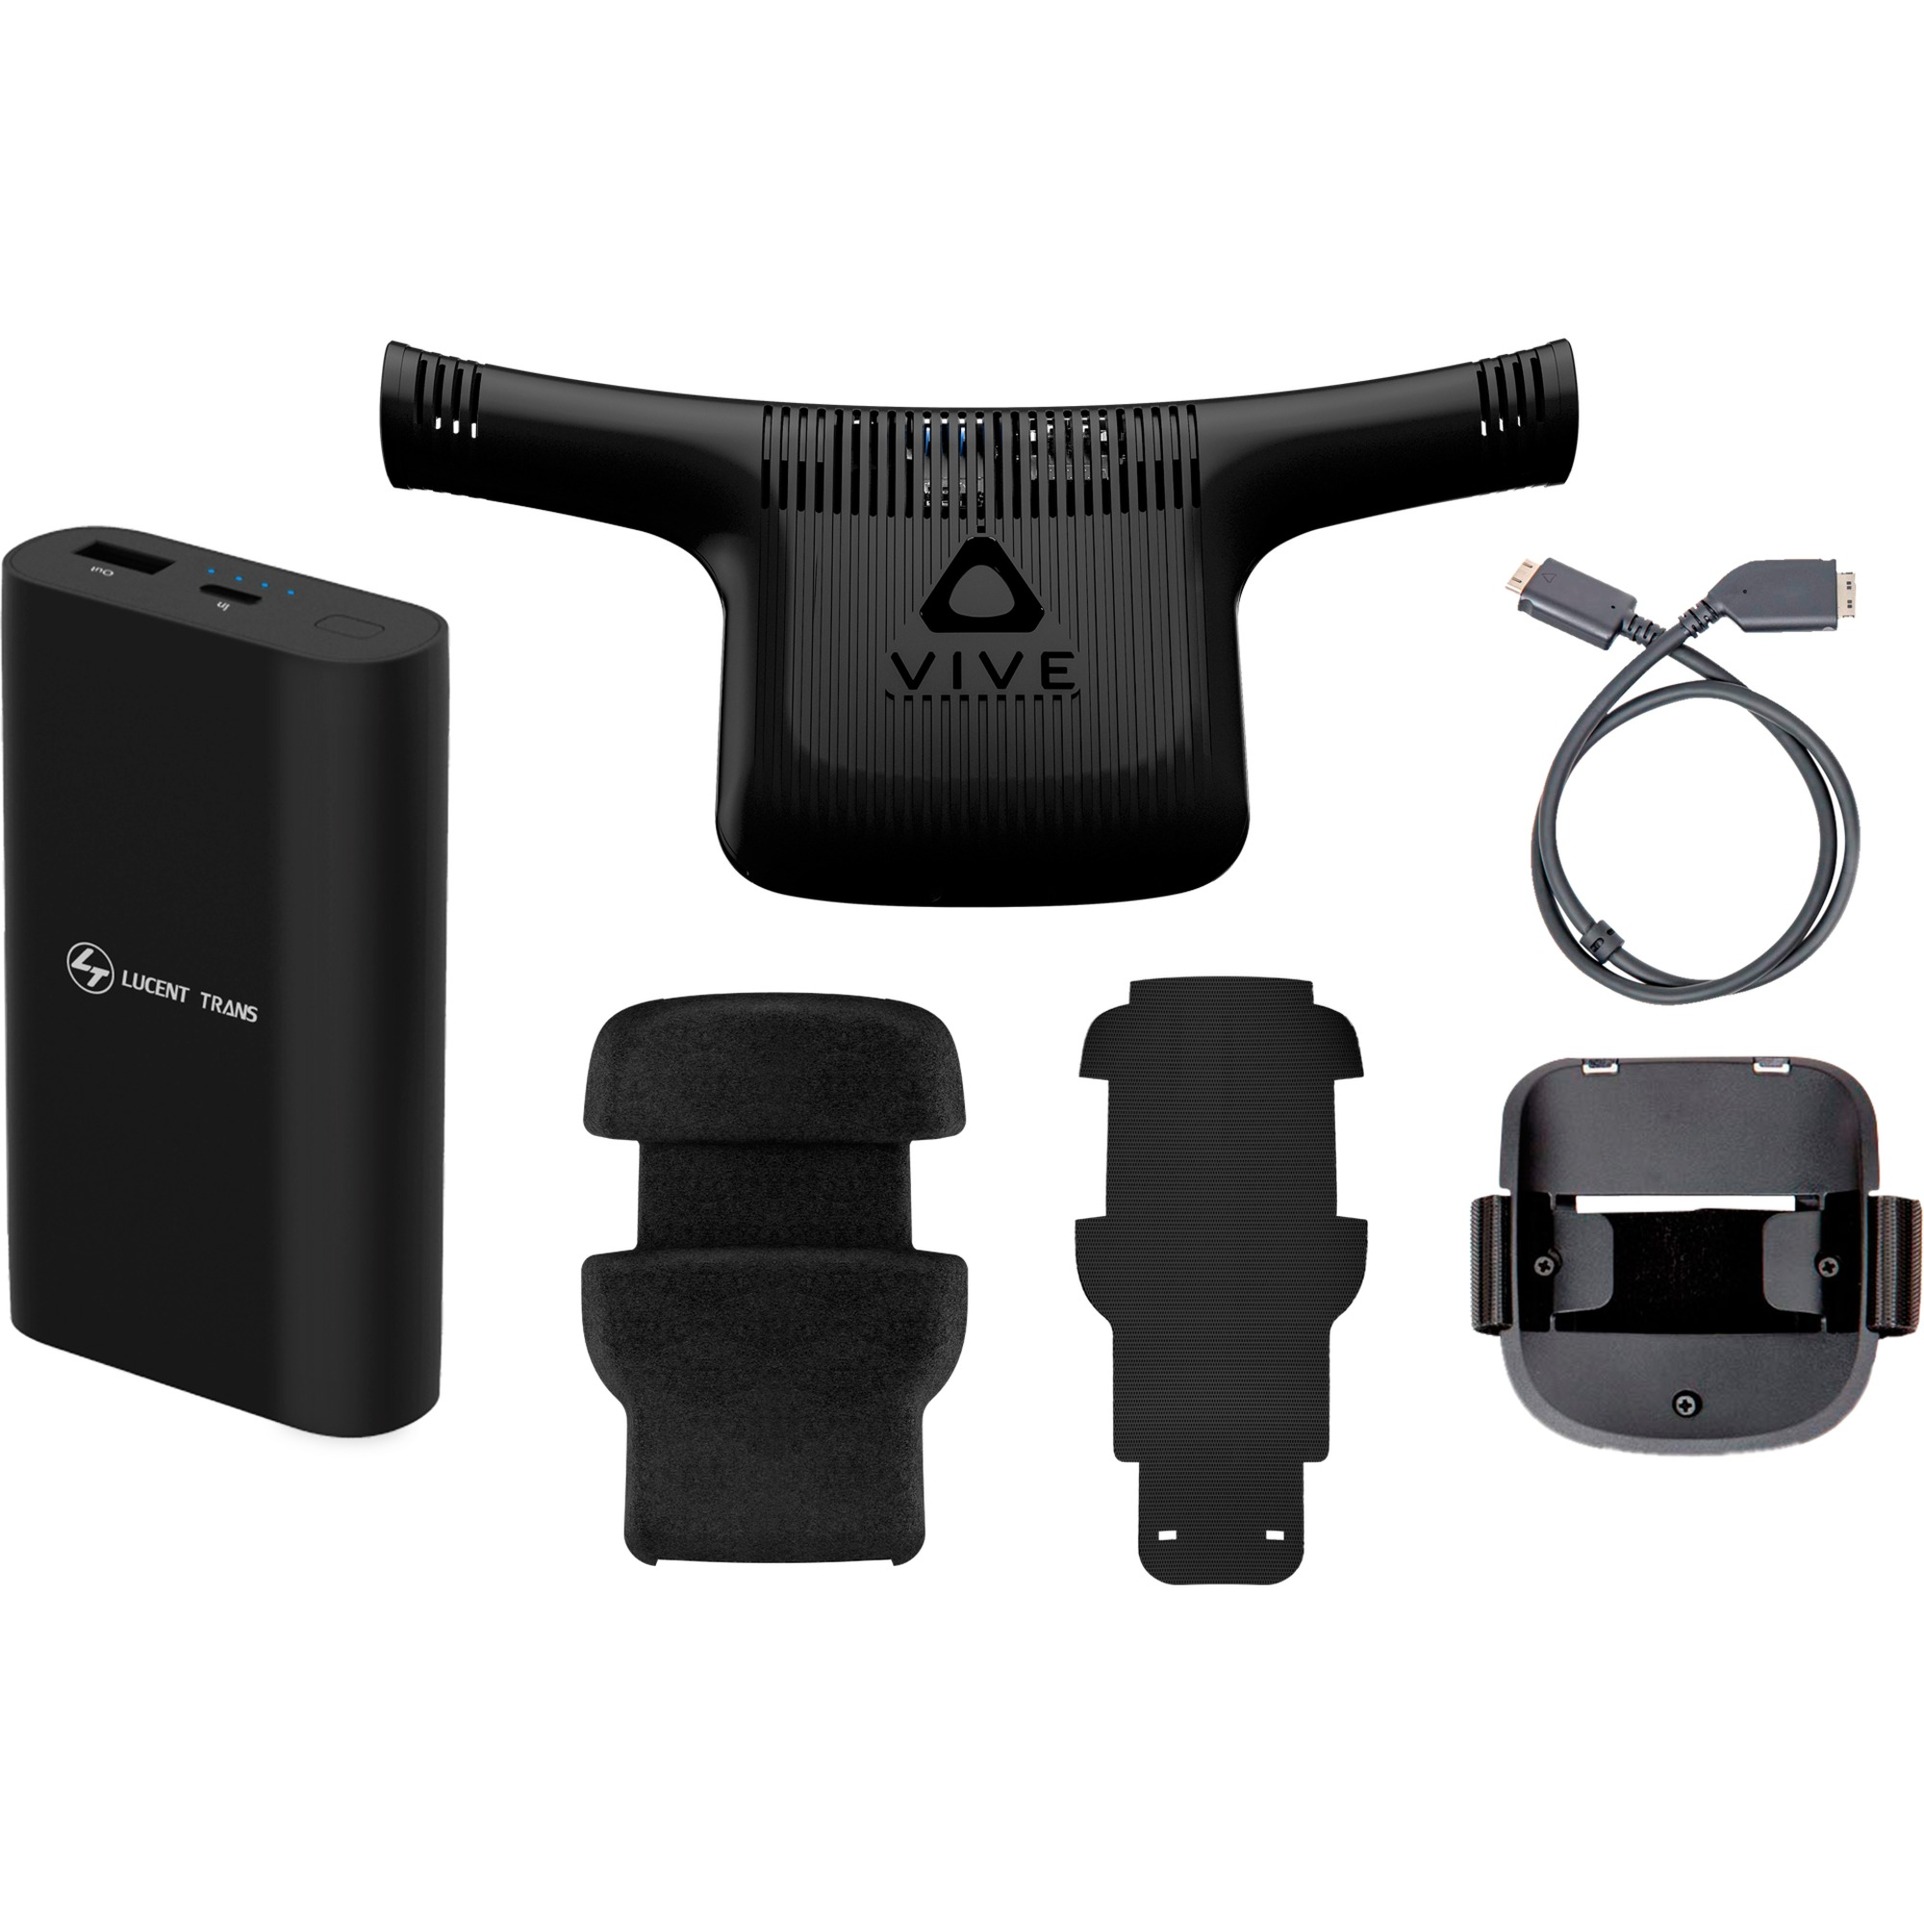 Image of Alternate - Vive Wireless Adapter Komplettset online einkaufen bei Alternate